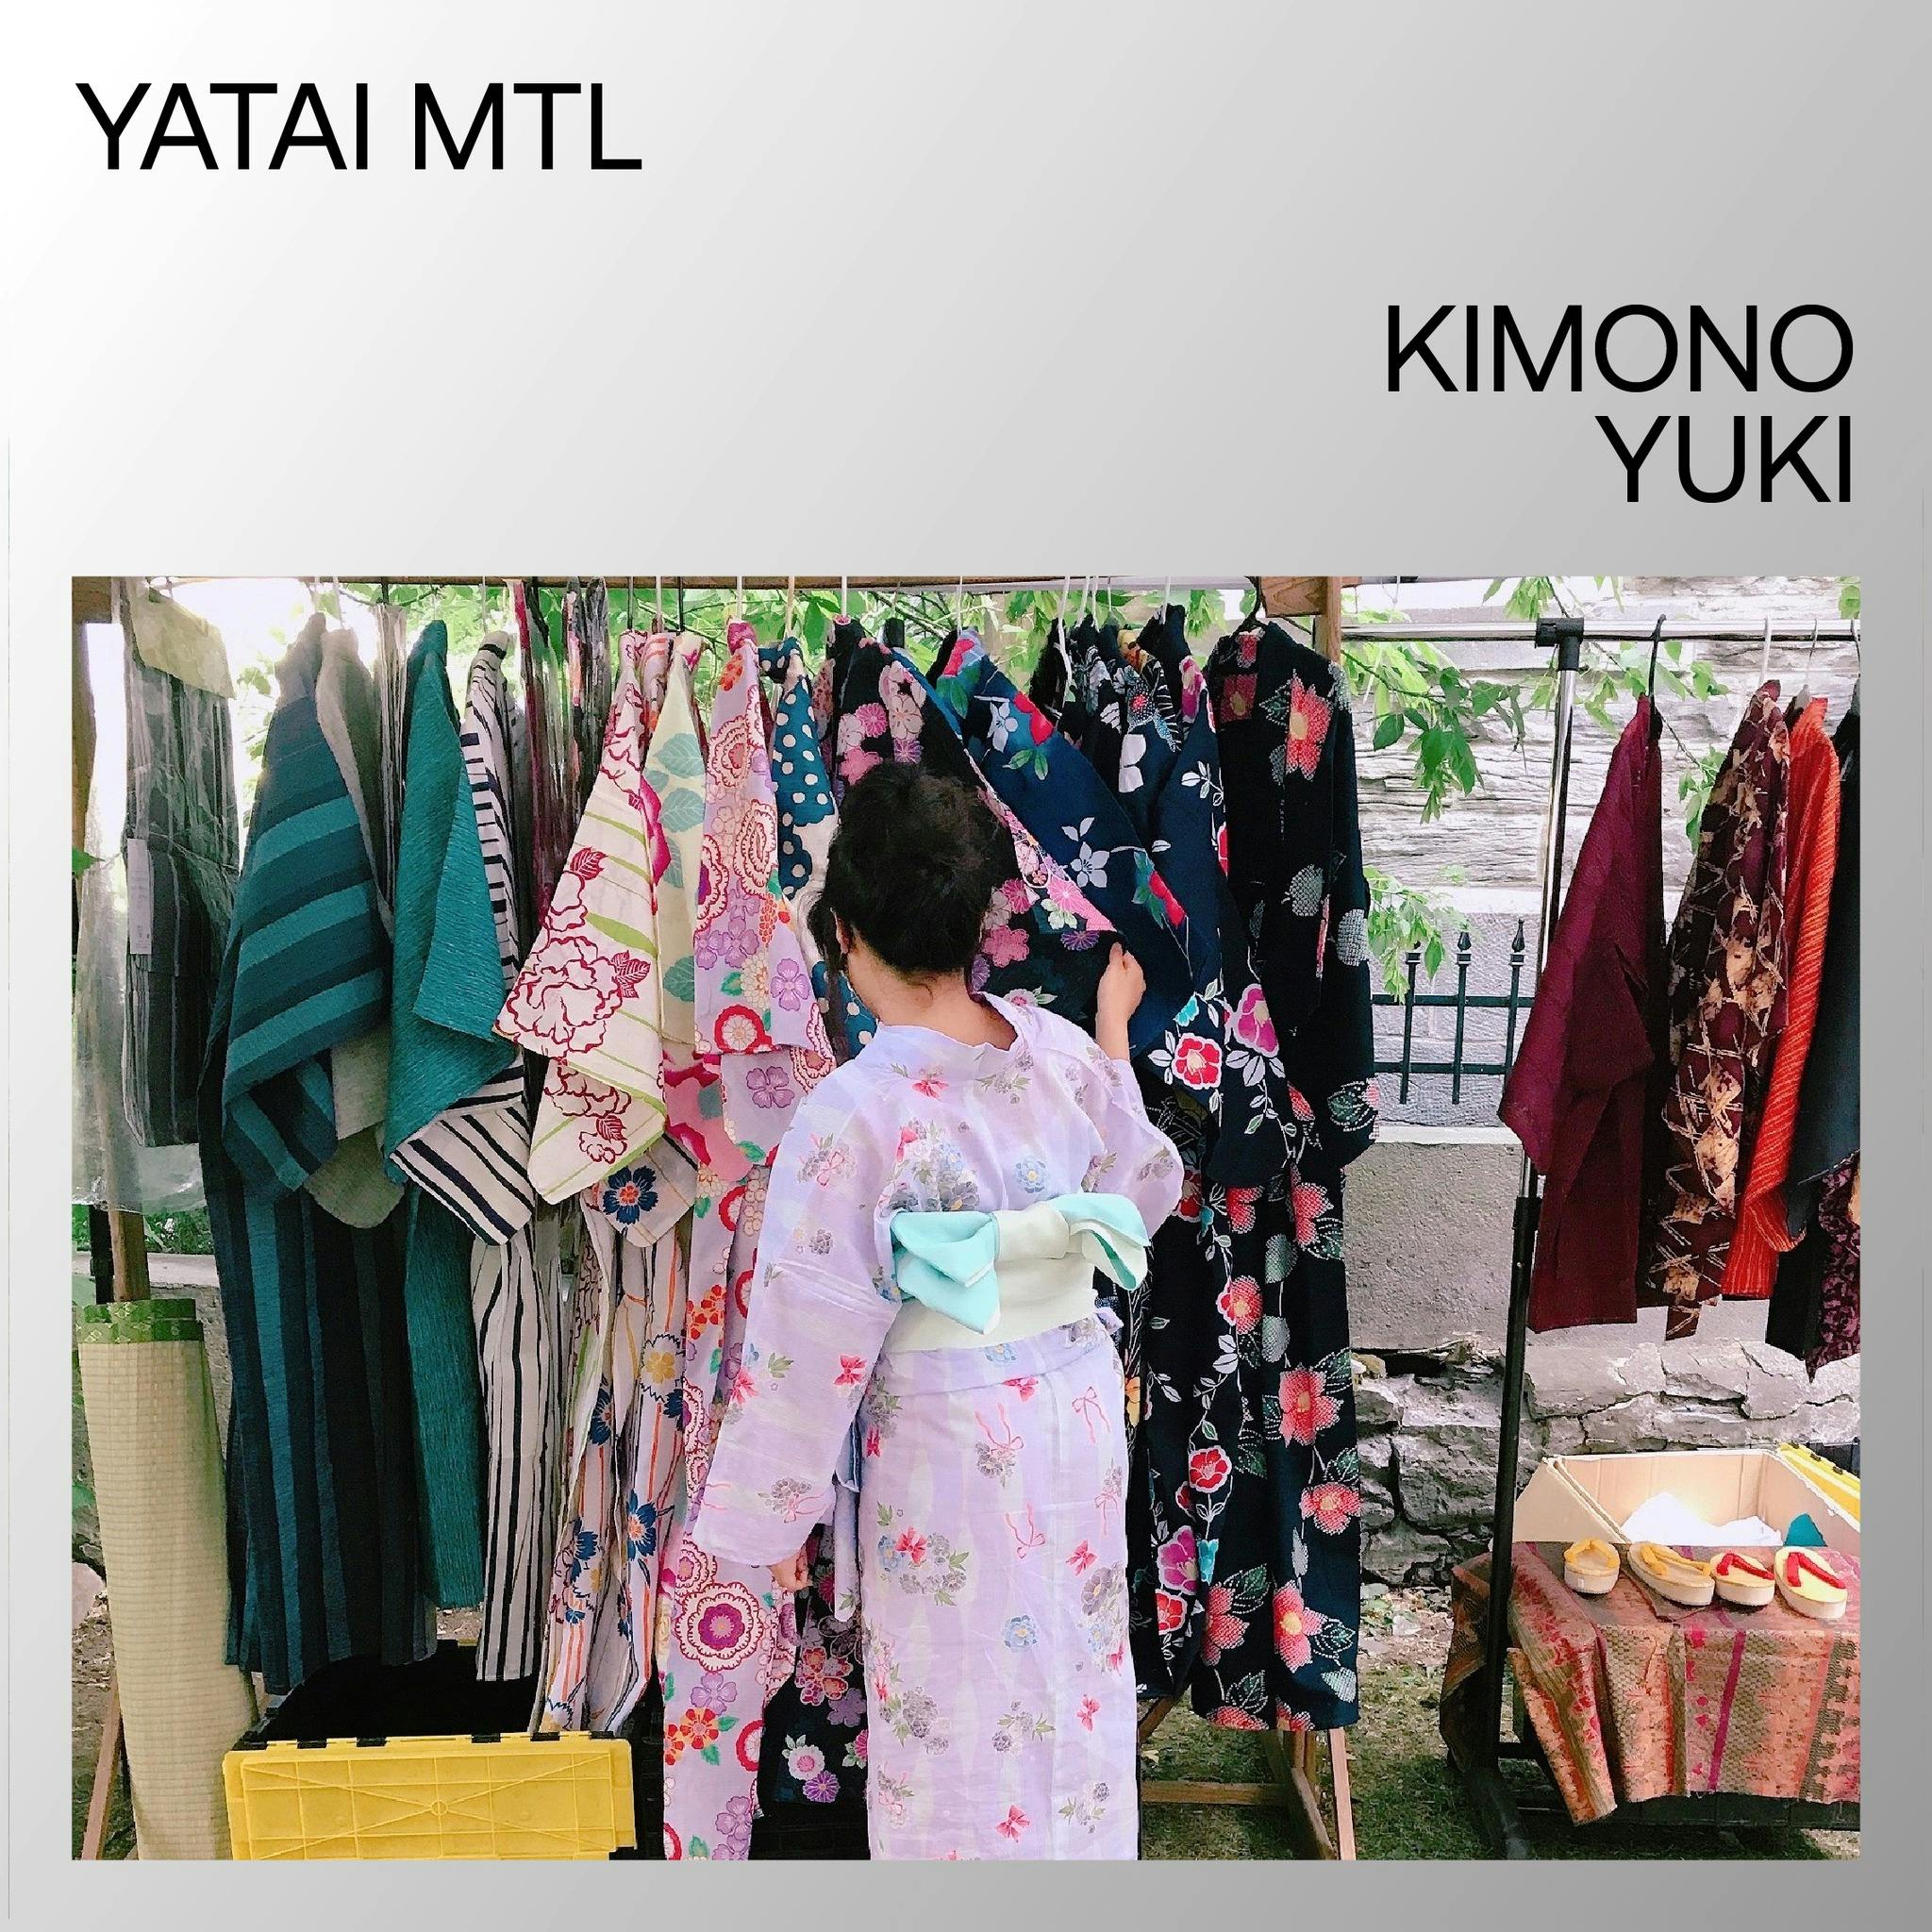 Kimono Yuki